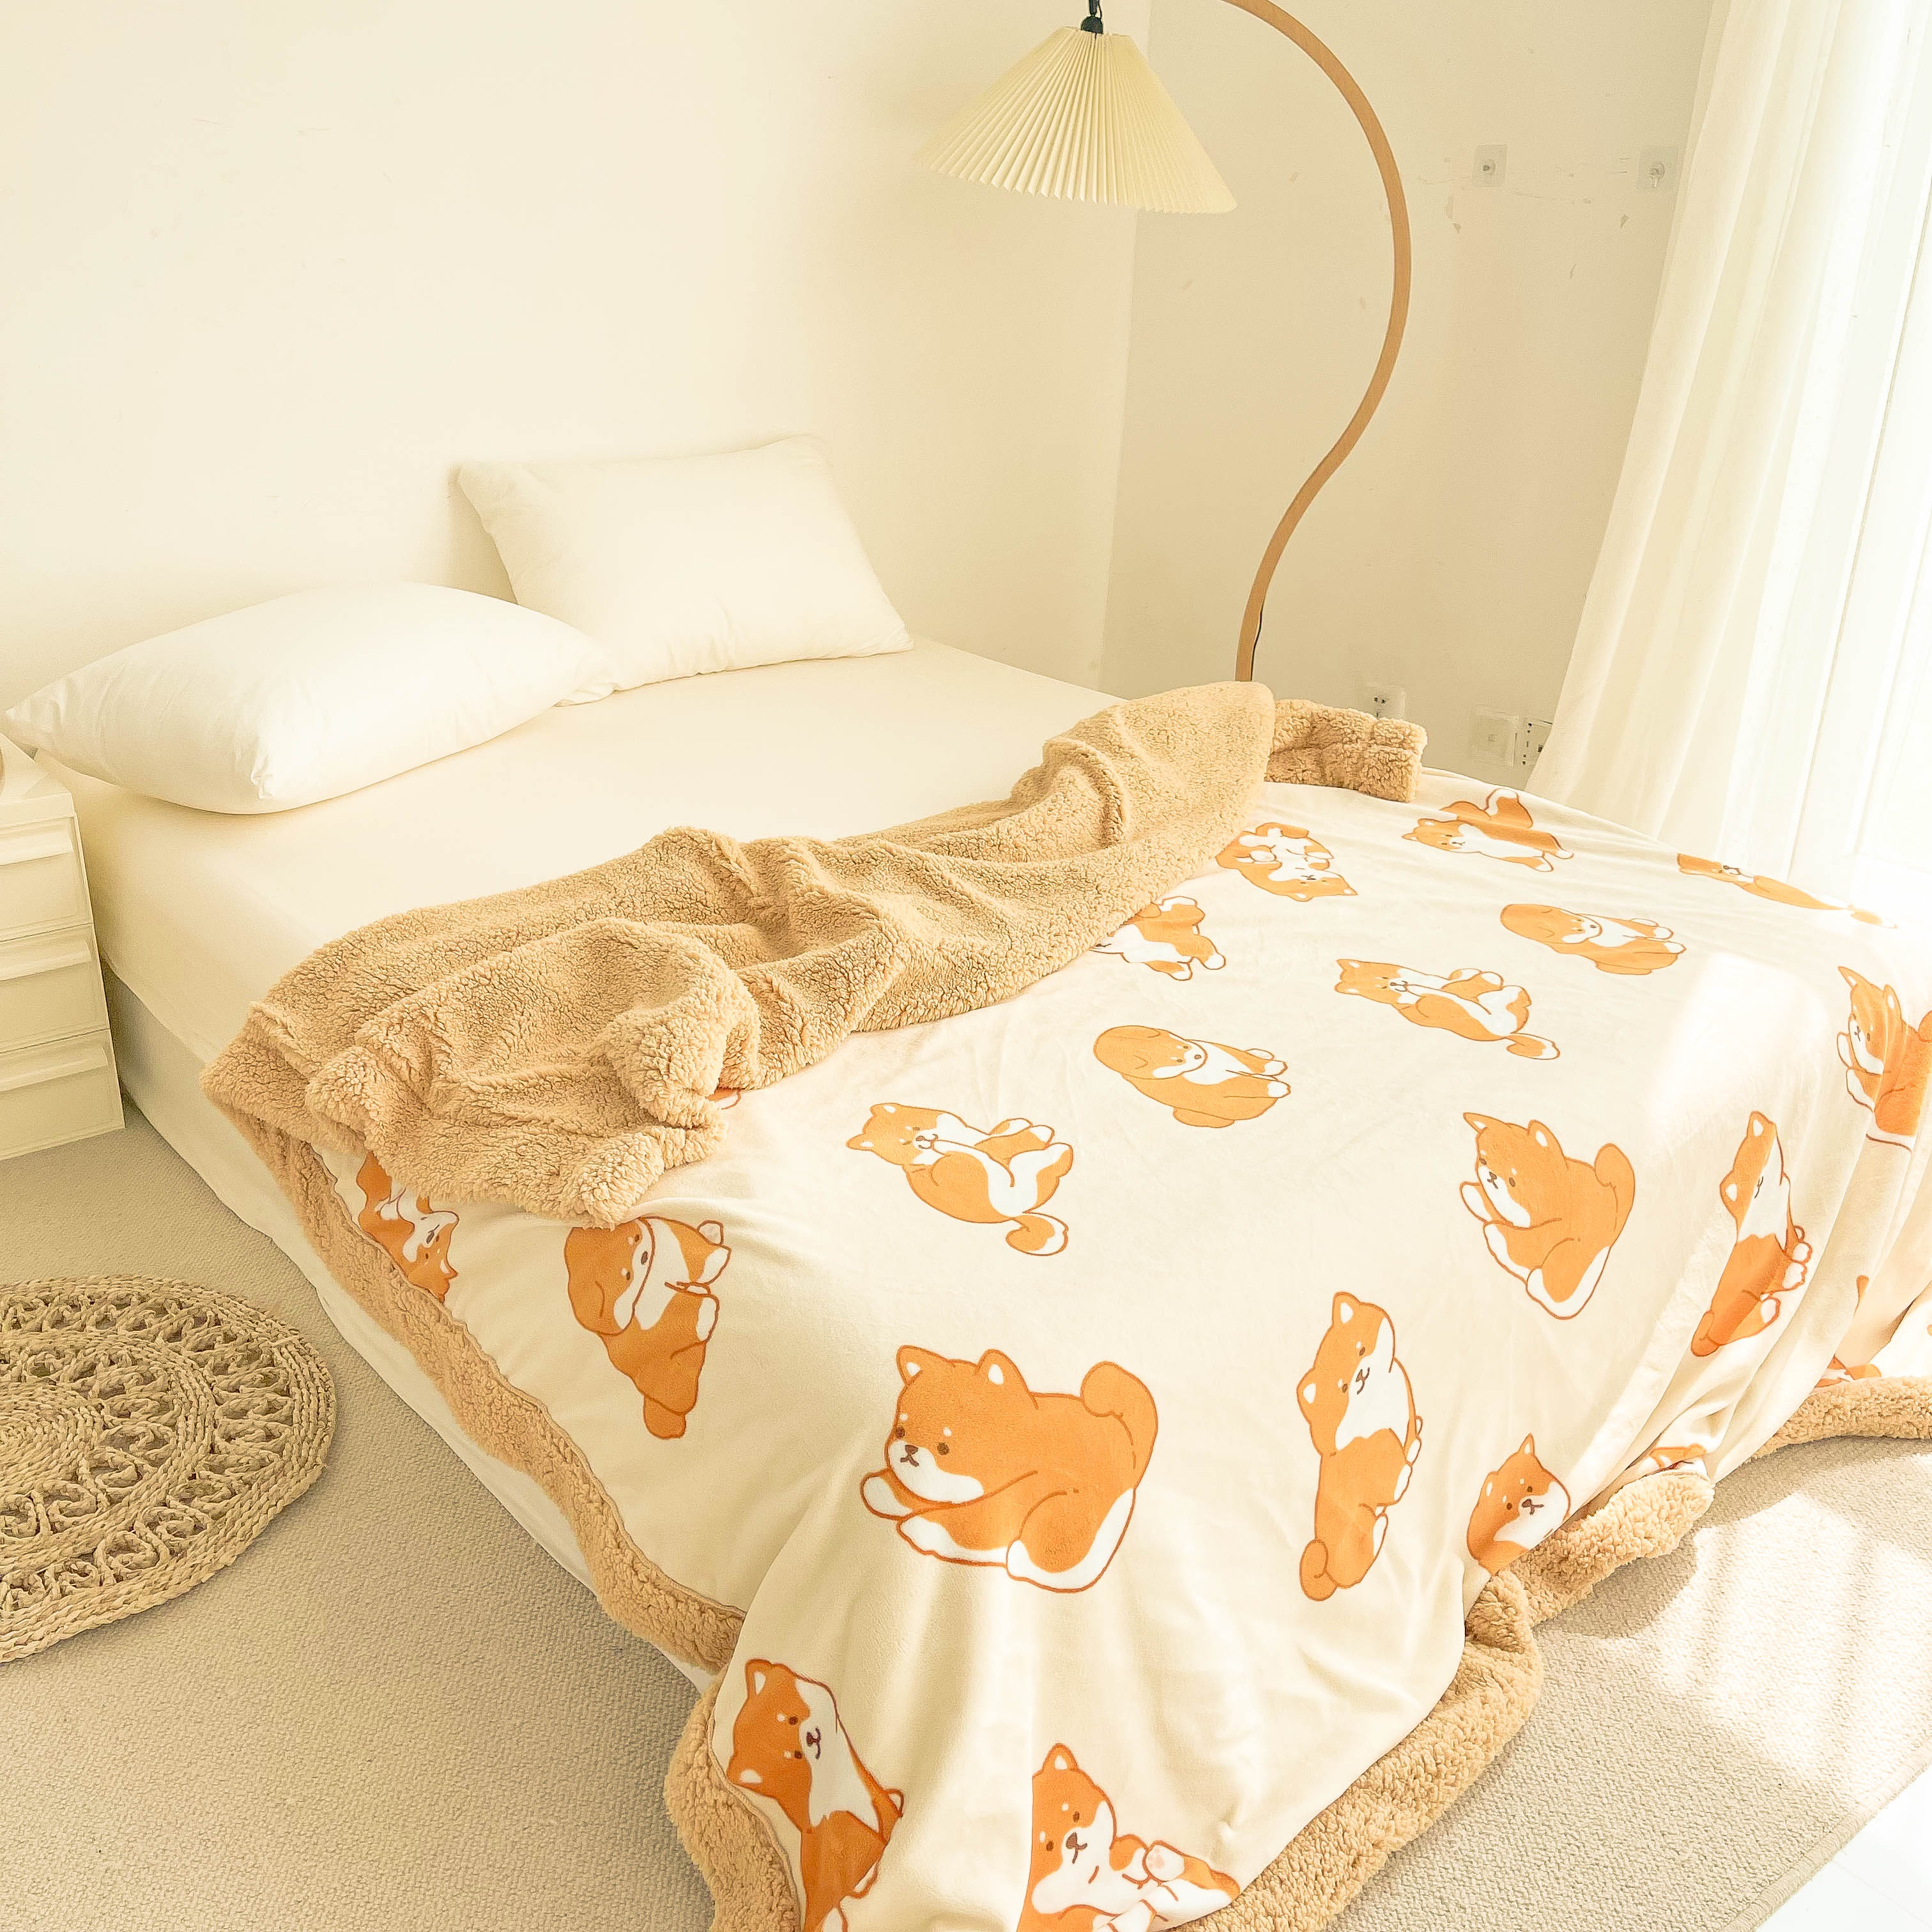 卡通柴犬加厚絨毯 溫暖保暖臥室午休毯 (8.3折)